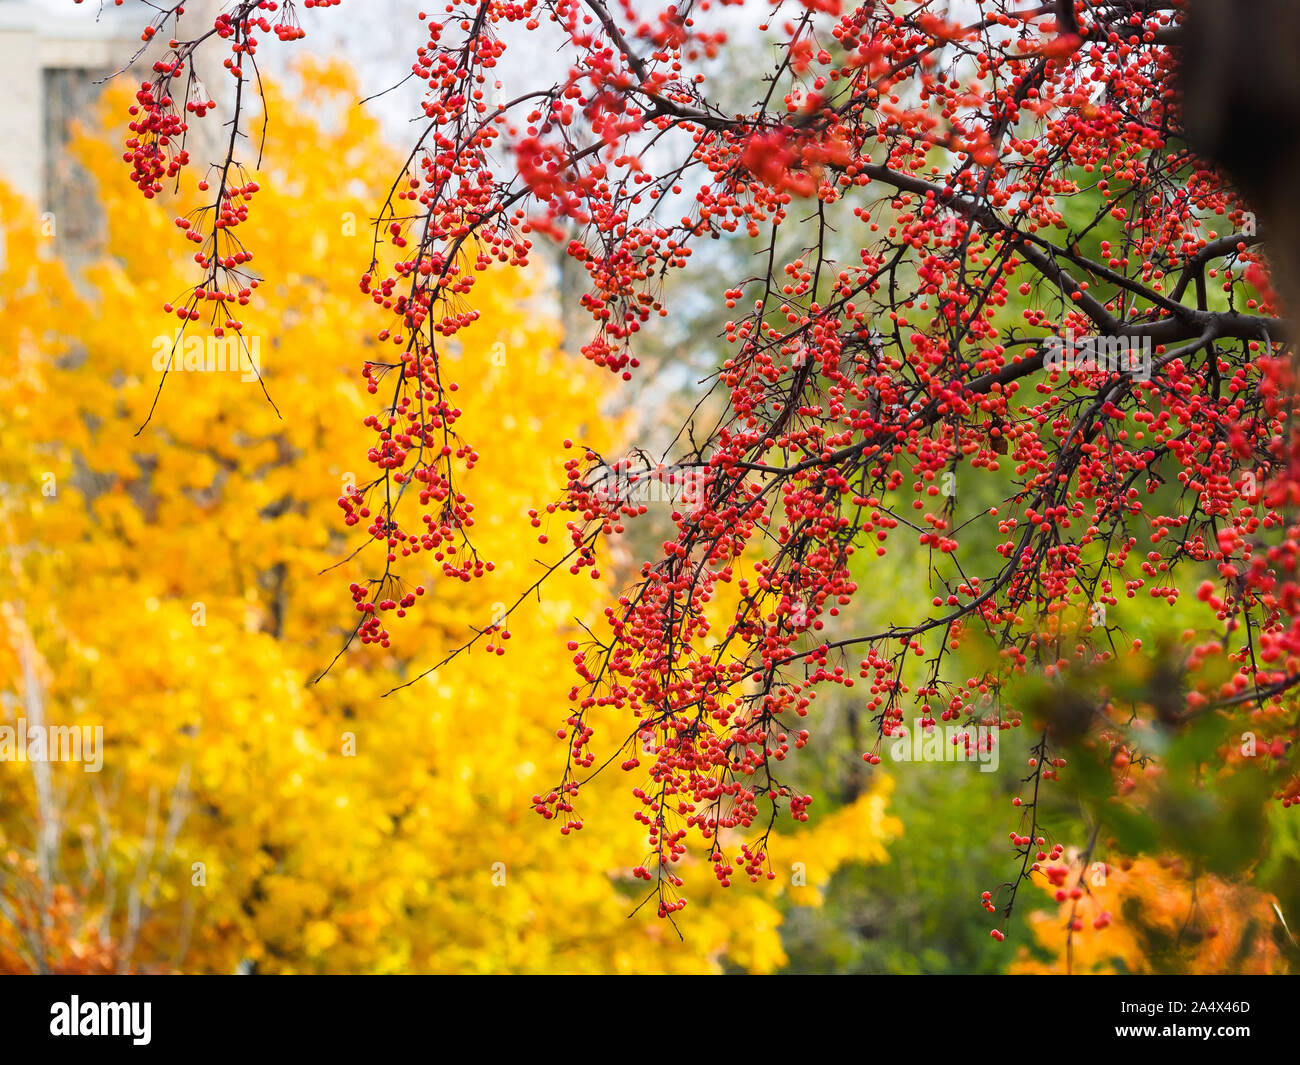 Wunderschöne, kleine rote Früchte auf chinesische Crab Apple tree branches Vor gelb Ahorn Blätter im Herbst aufhängen. Stockfoto